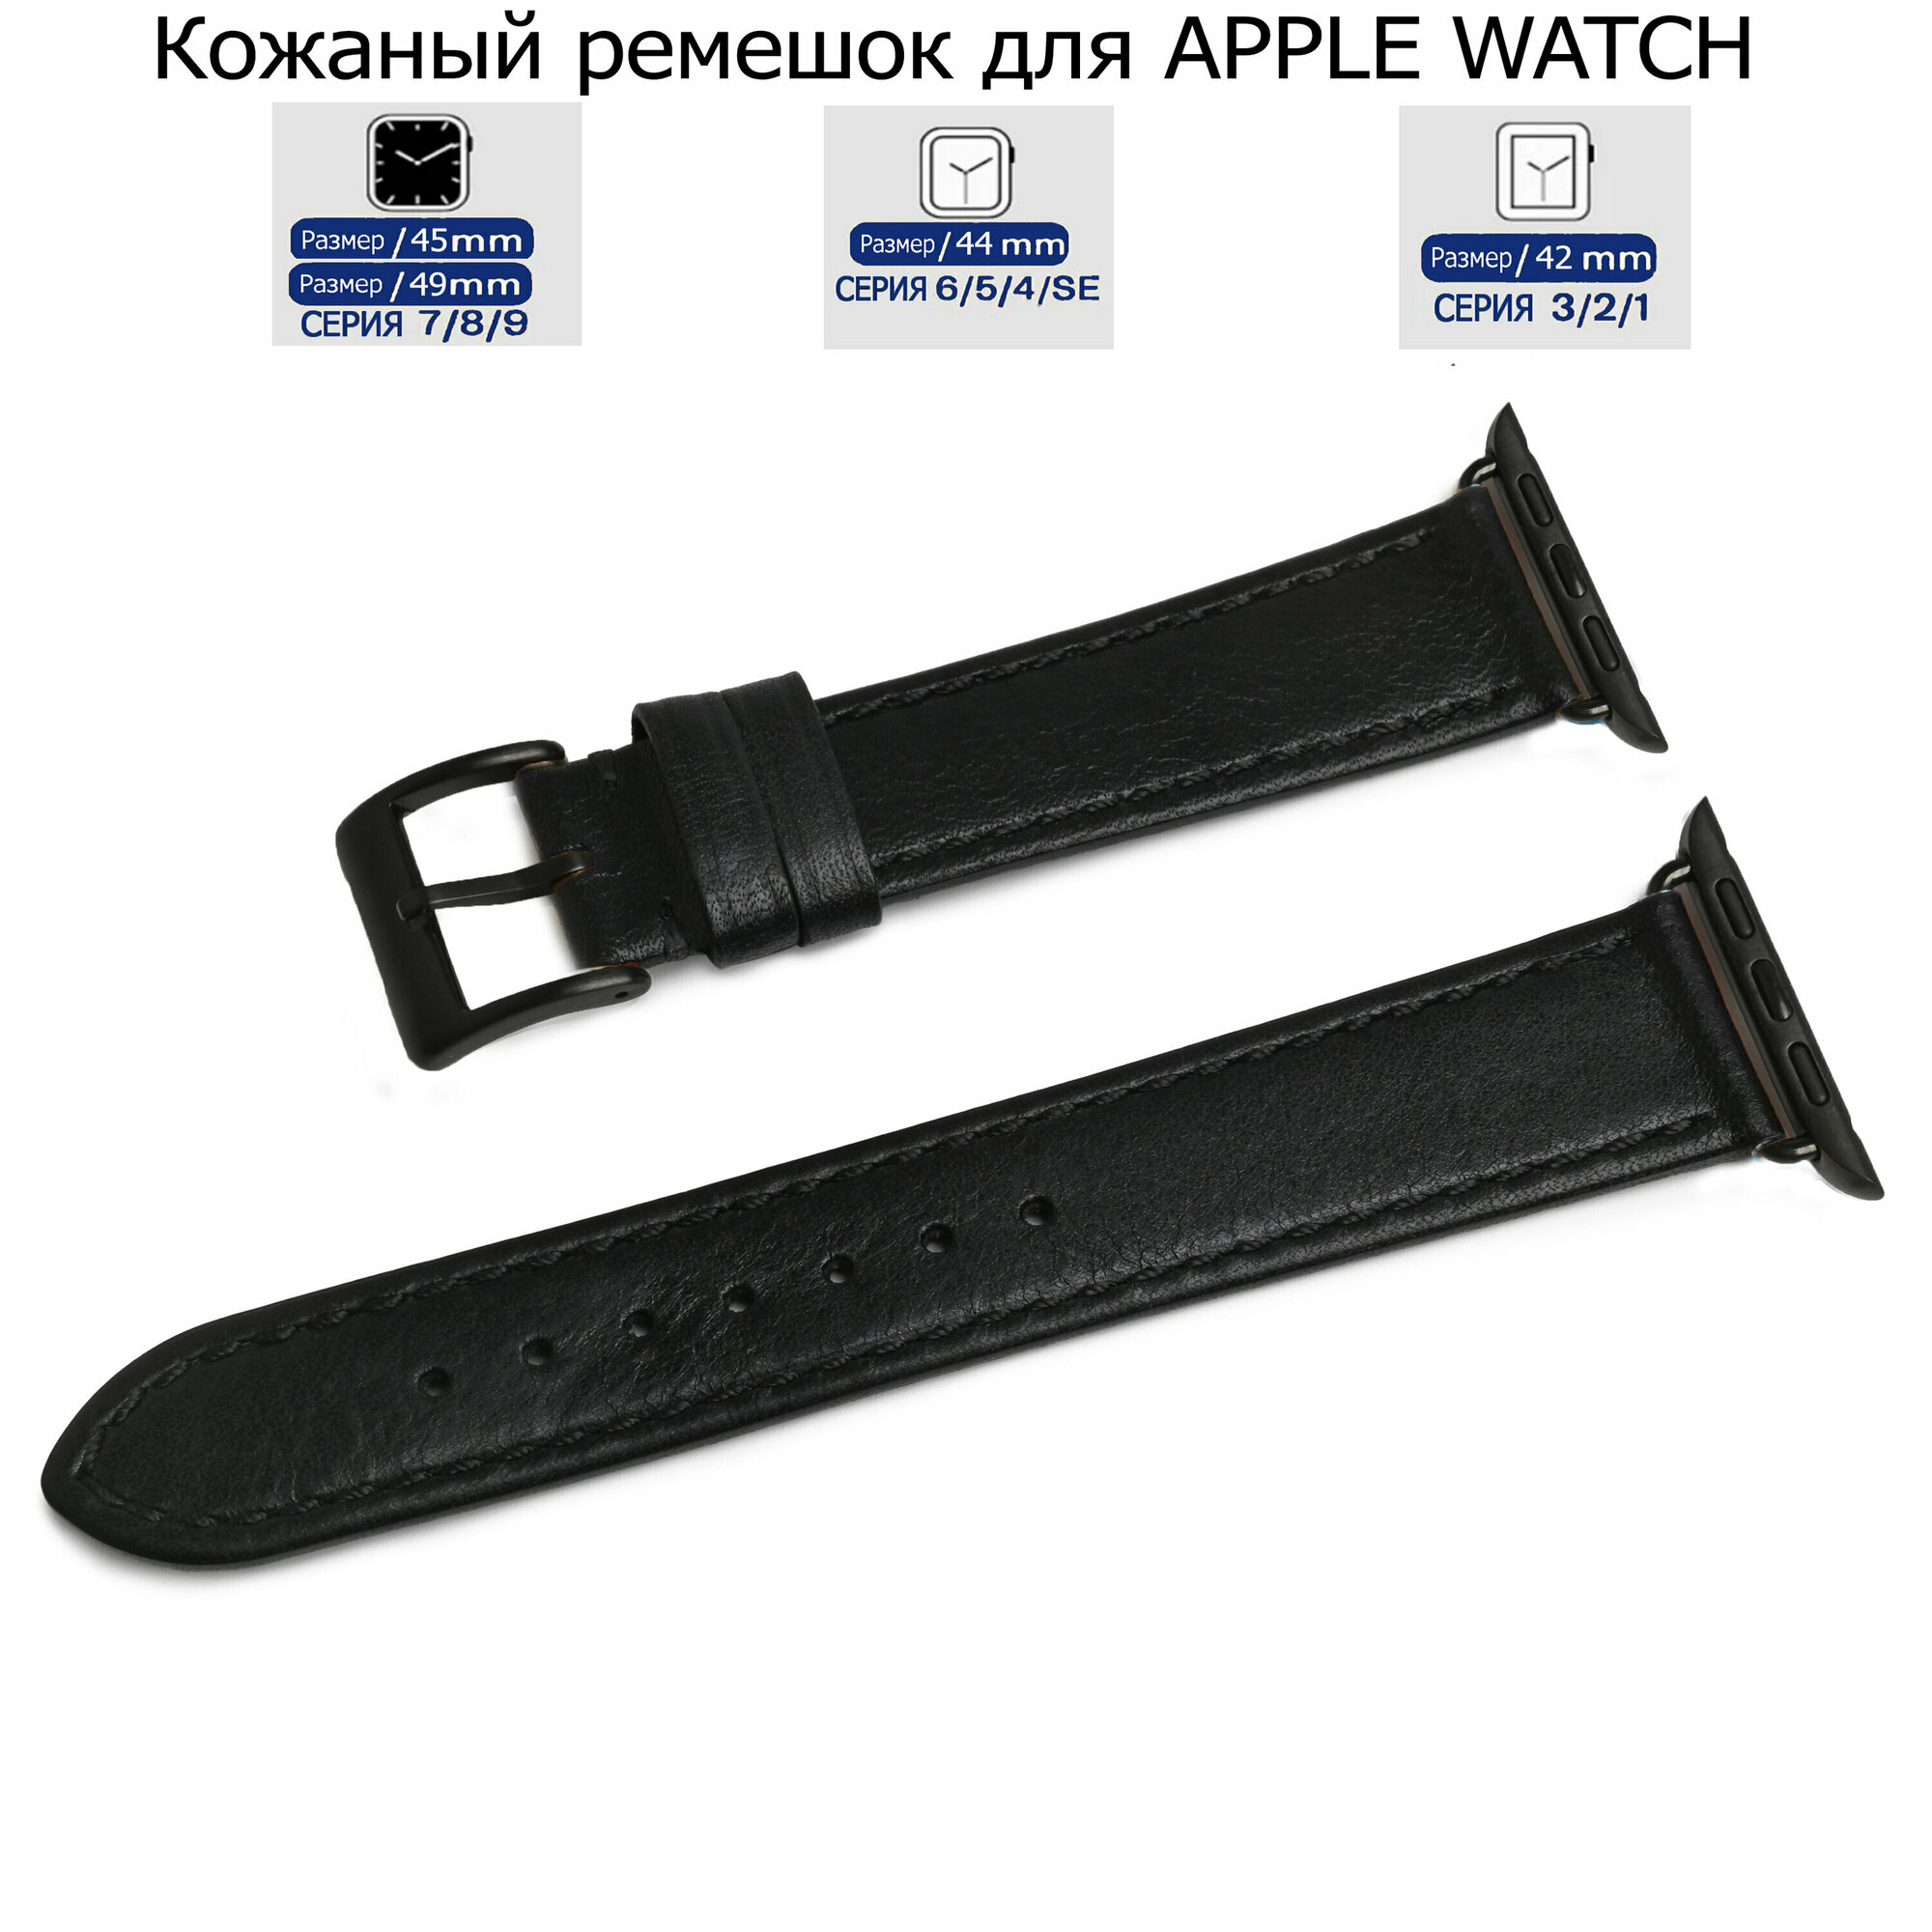 Ремешок для Apple Watch с диагональю 42/44/45/49 натуральная кожа черный, черная нитка, переходник черного цвета